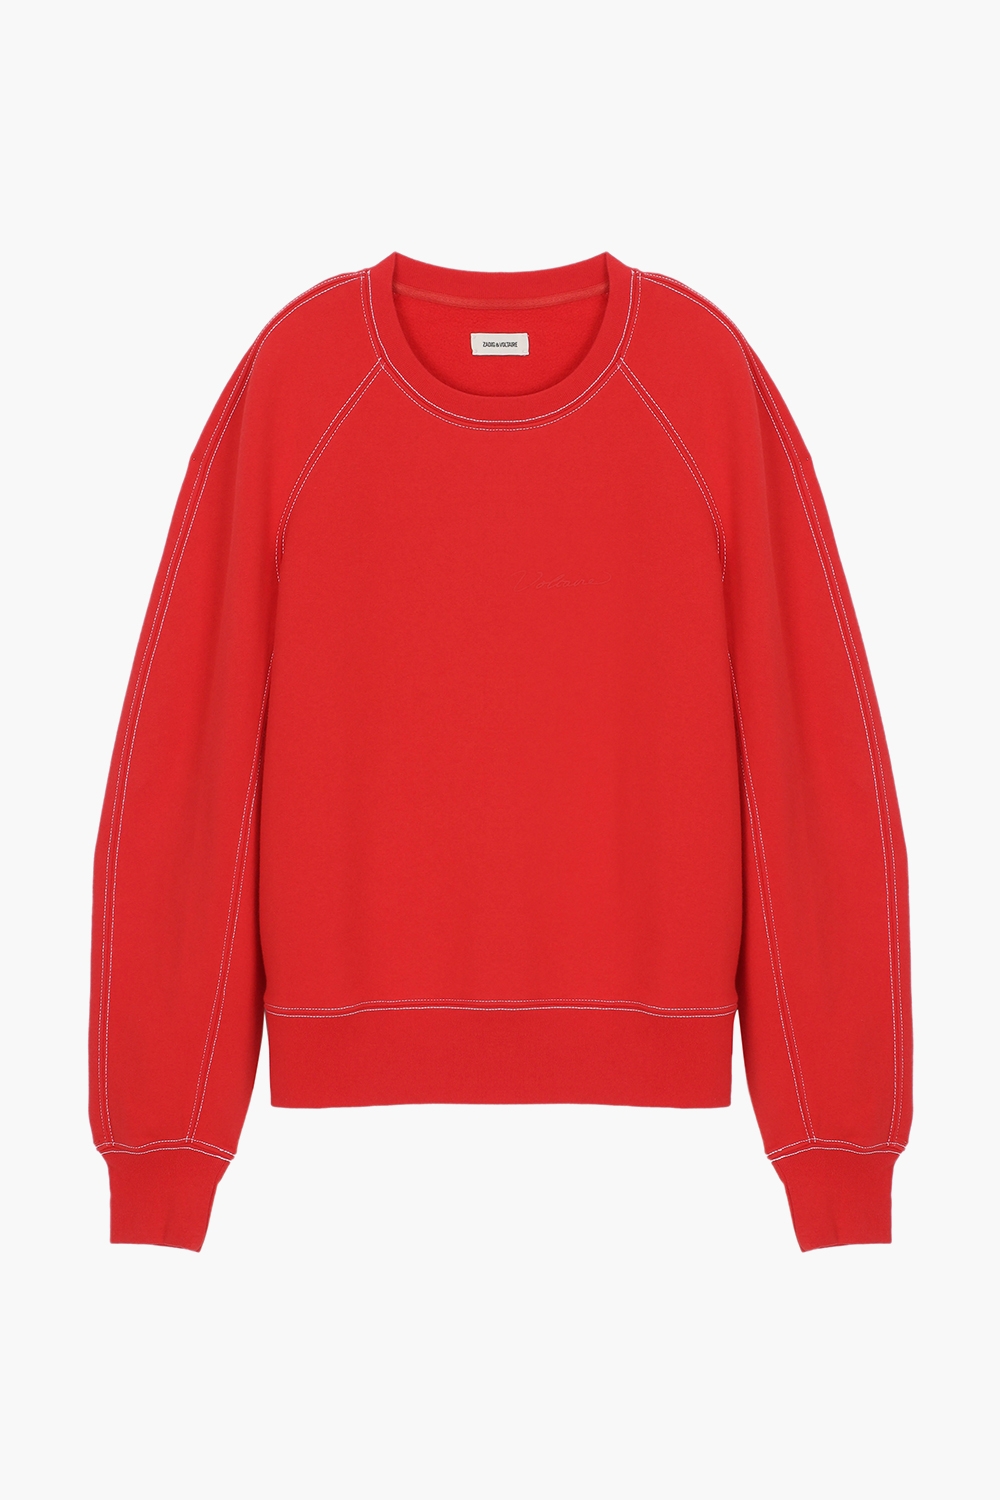 Woss Voltaire Sweatshirt